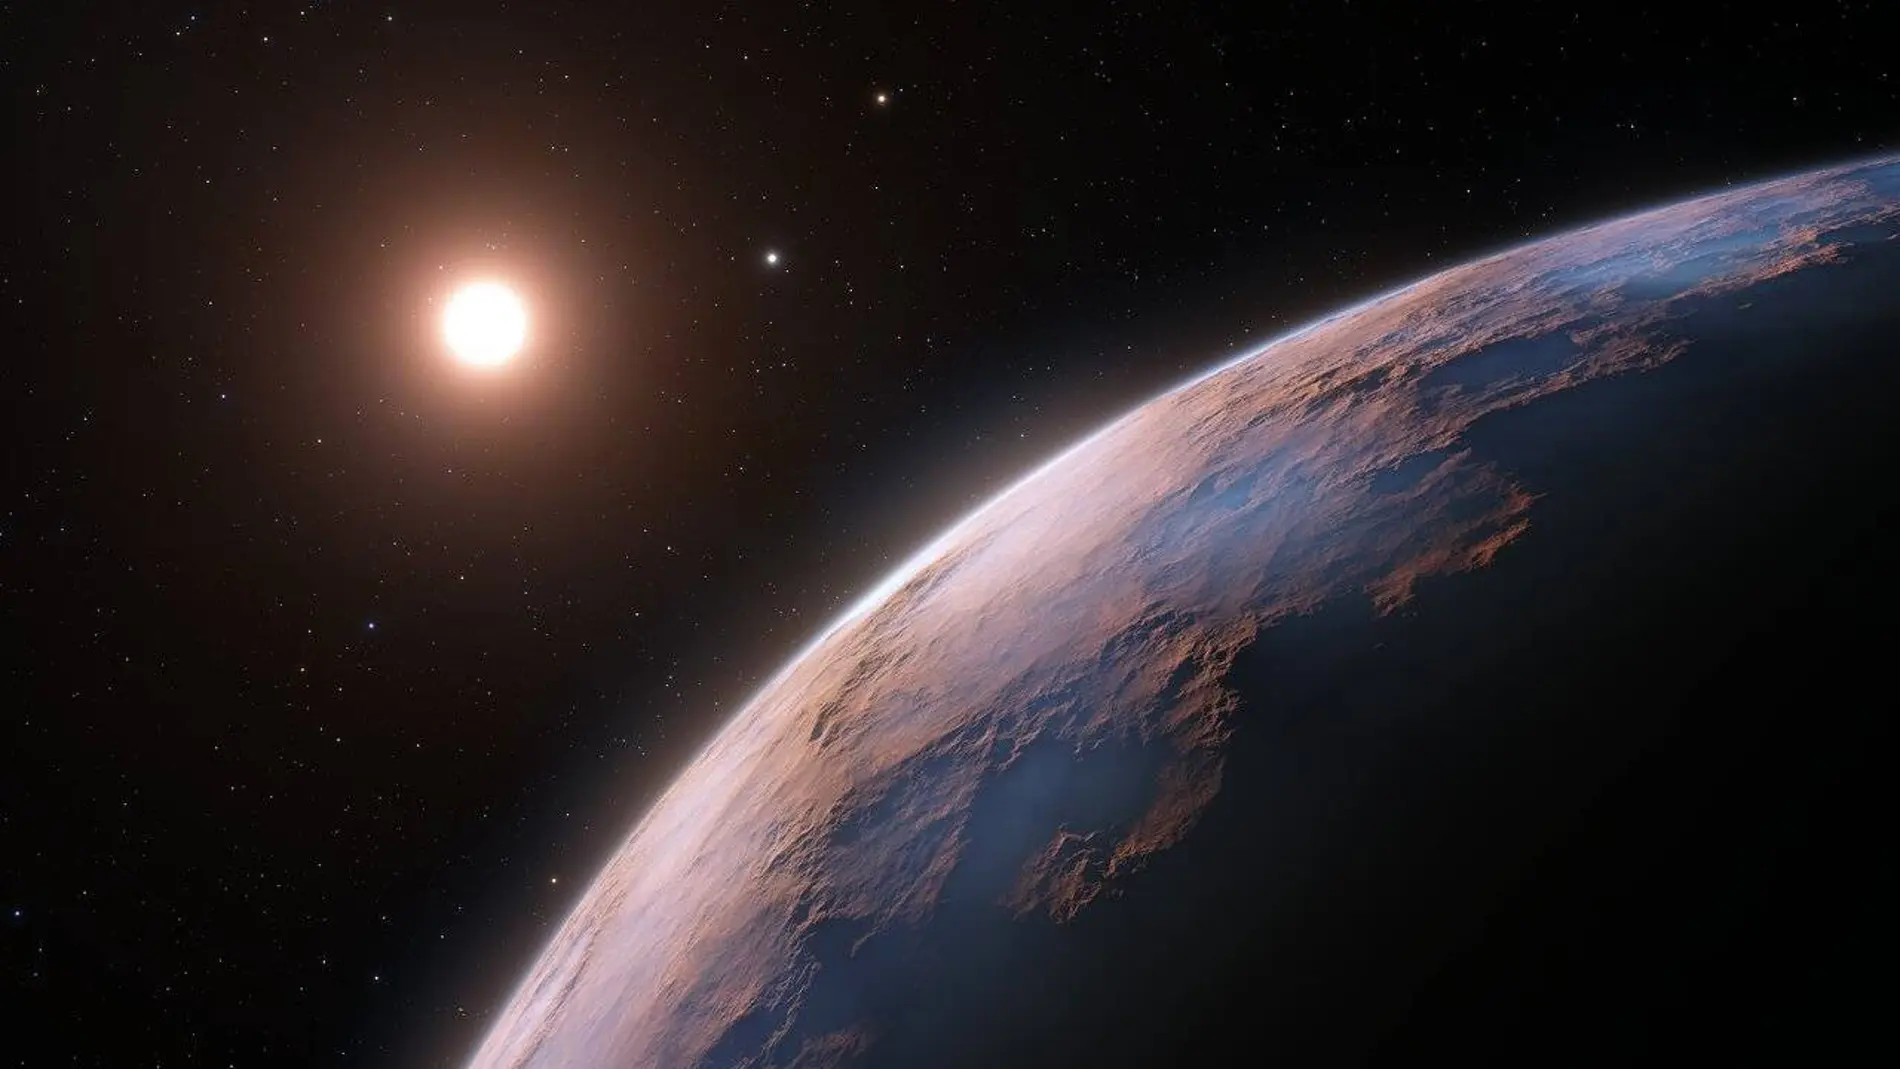 Representación artística de Próxima d orbitando la estrella enana roja Próxima Centauri. Al fondo, otros dos planetas: Próxima b y Próxima c.